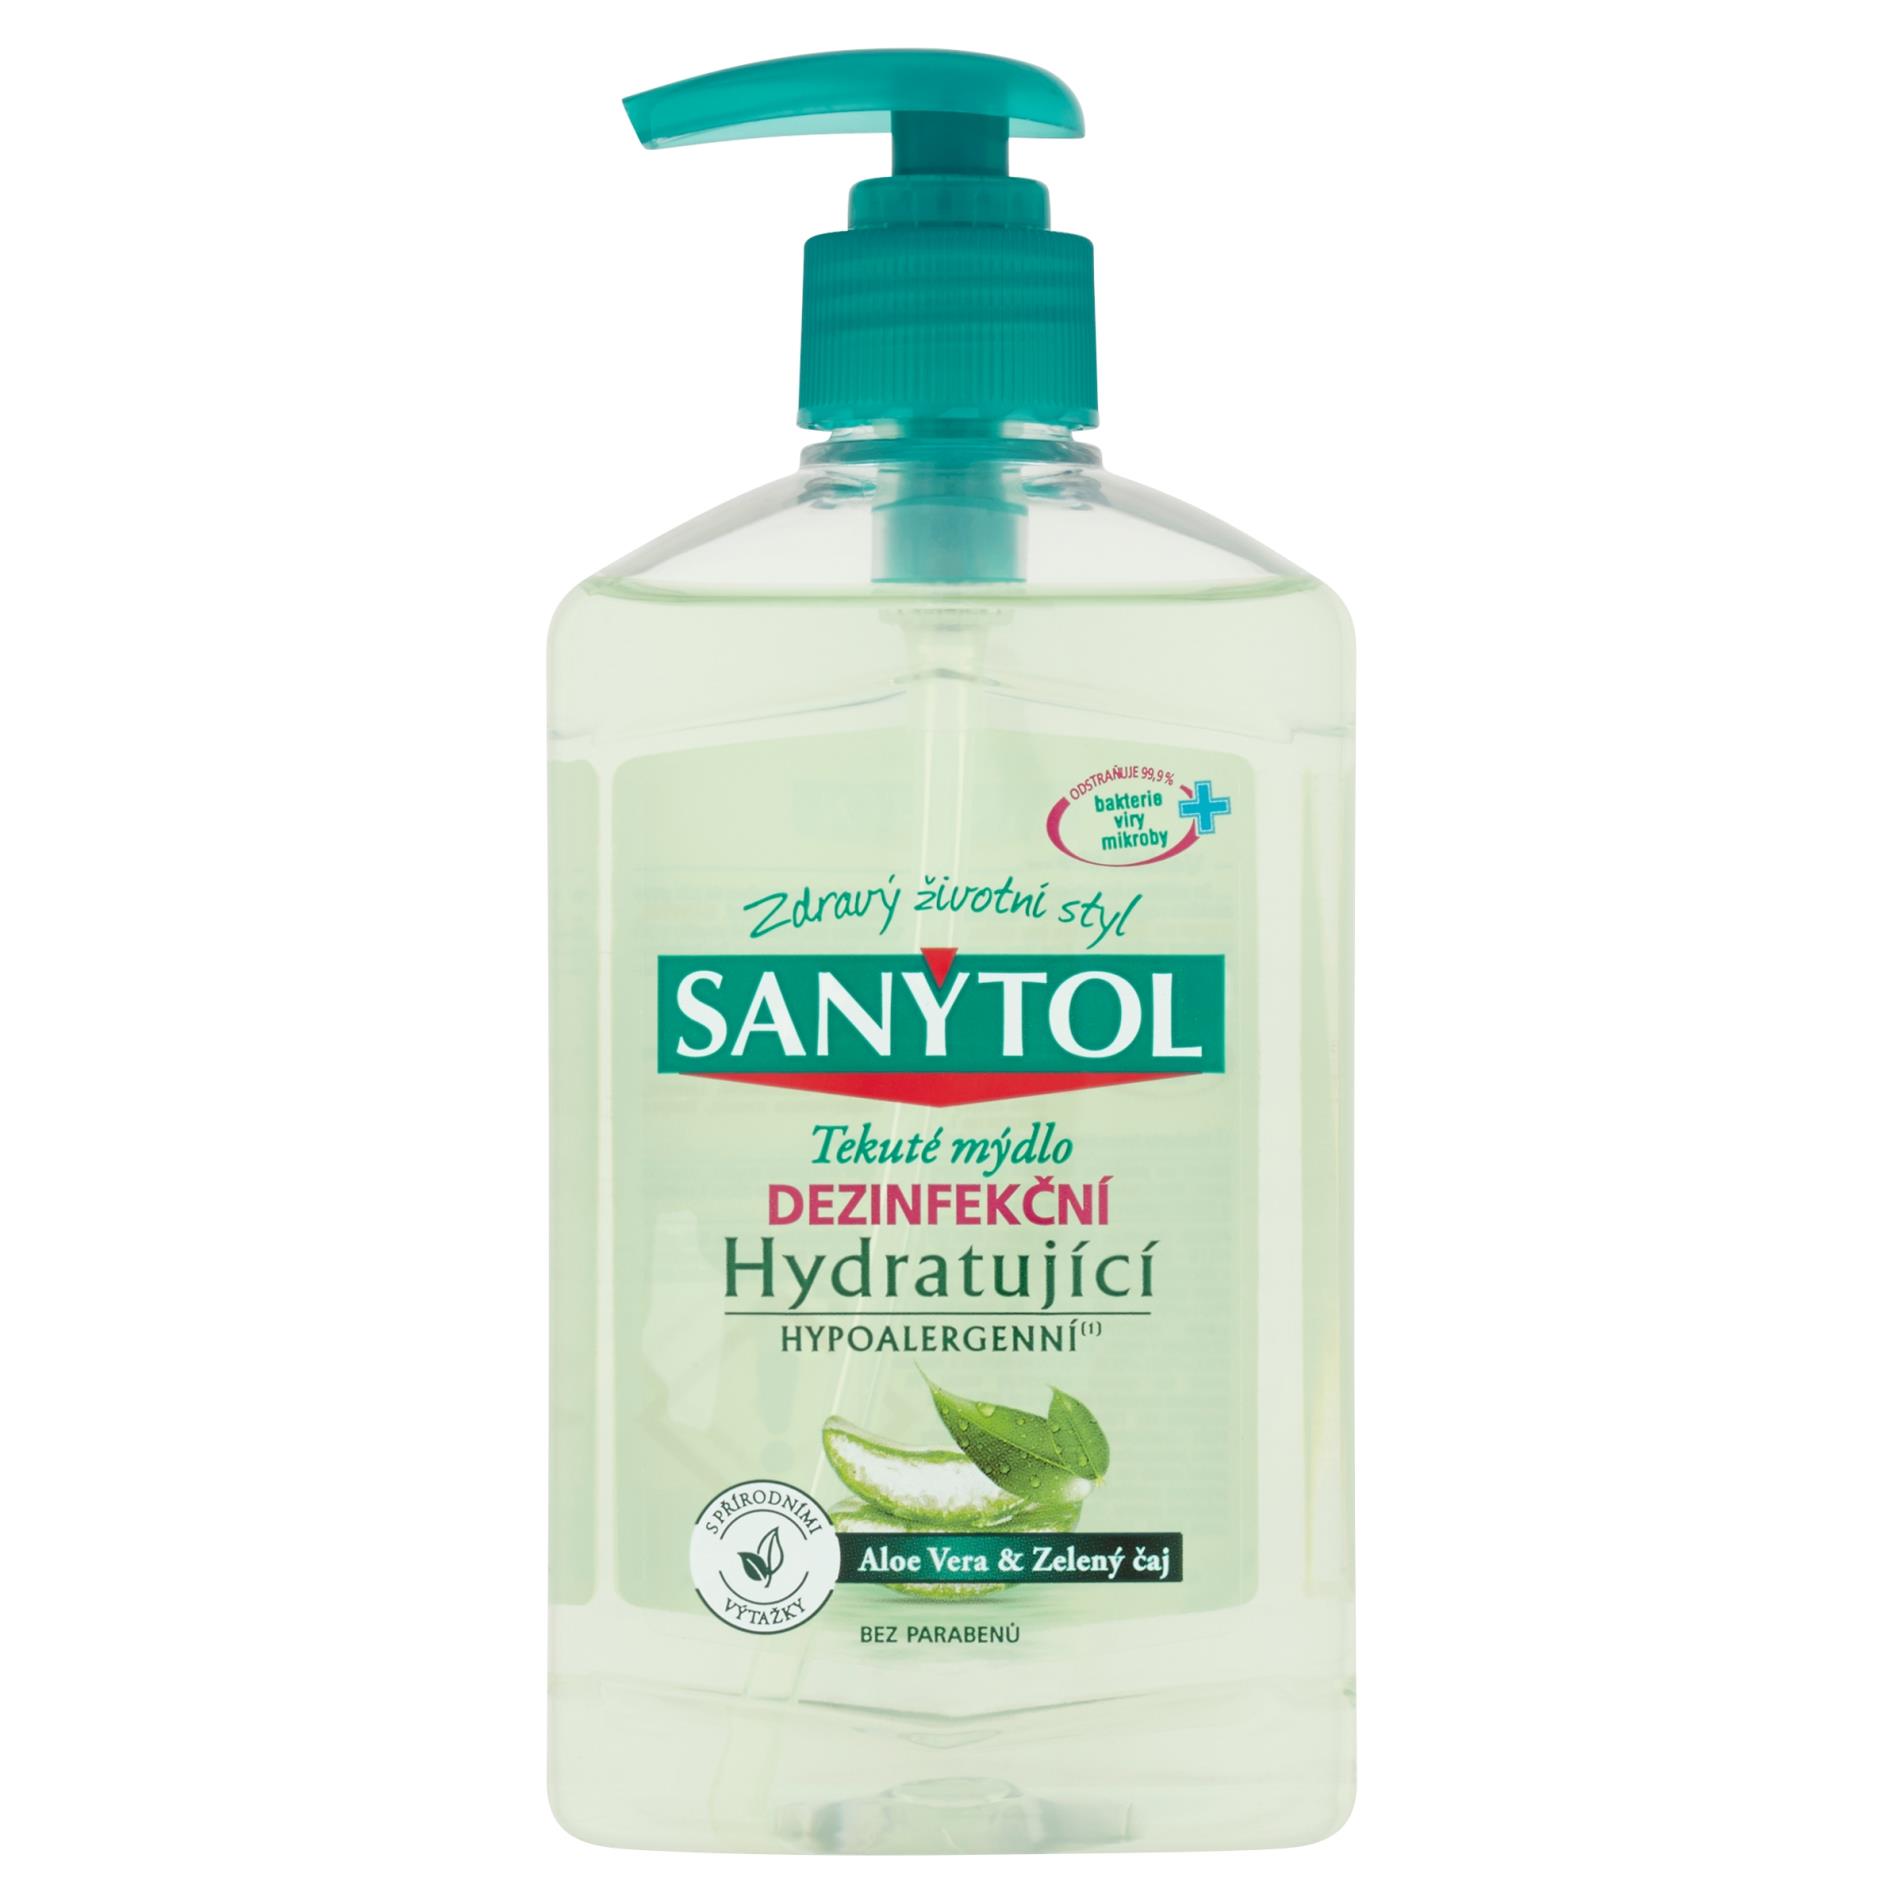 Sanytol Tekuté mýdlo Sanytol - dezinfekční, hydratační, 250 ml